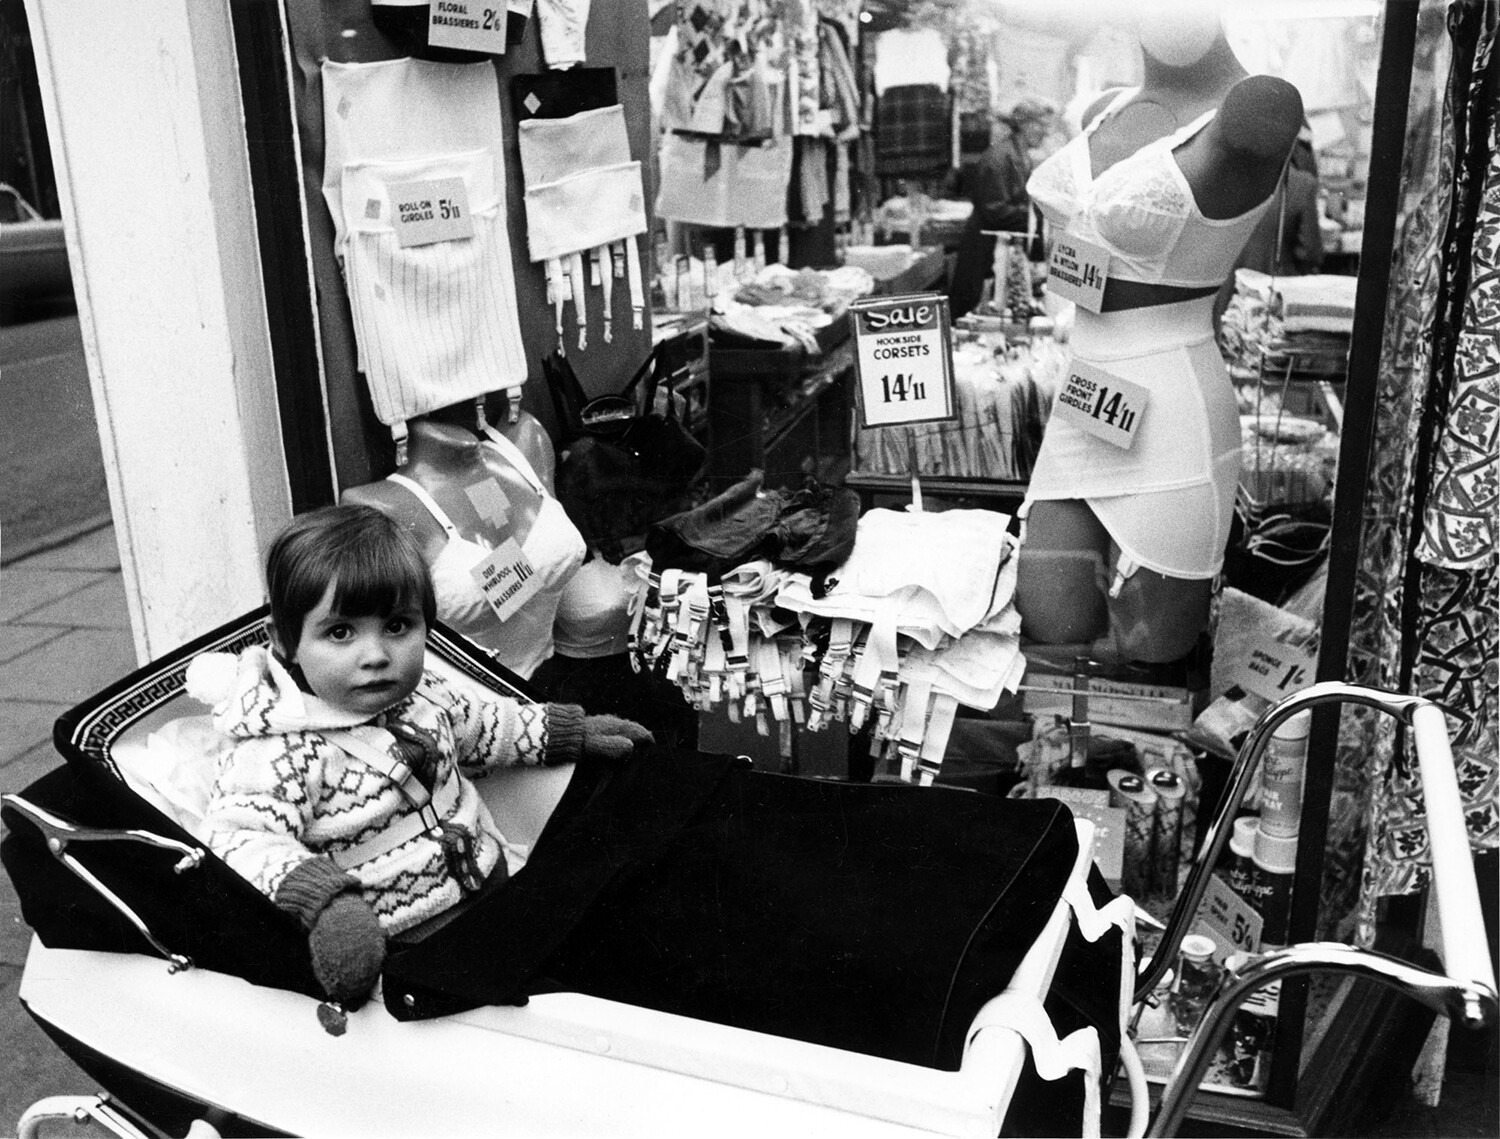 В магазине нижнего белья, Эдинбург, 1965. Фотограф Роберт Бломфилд